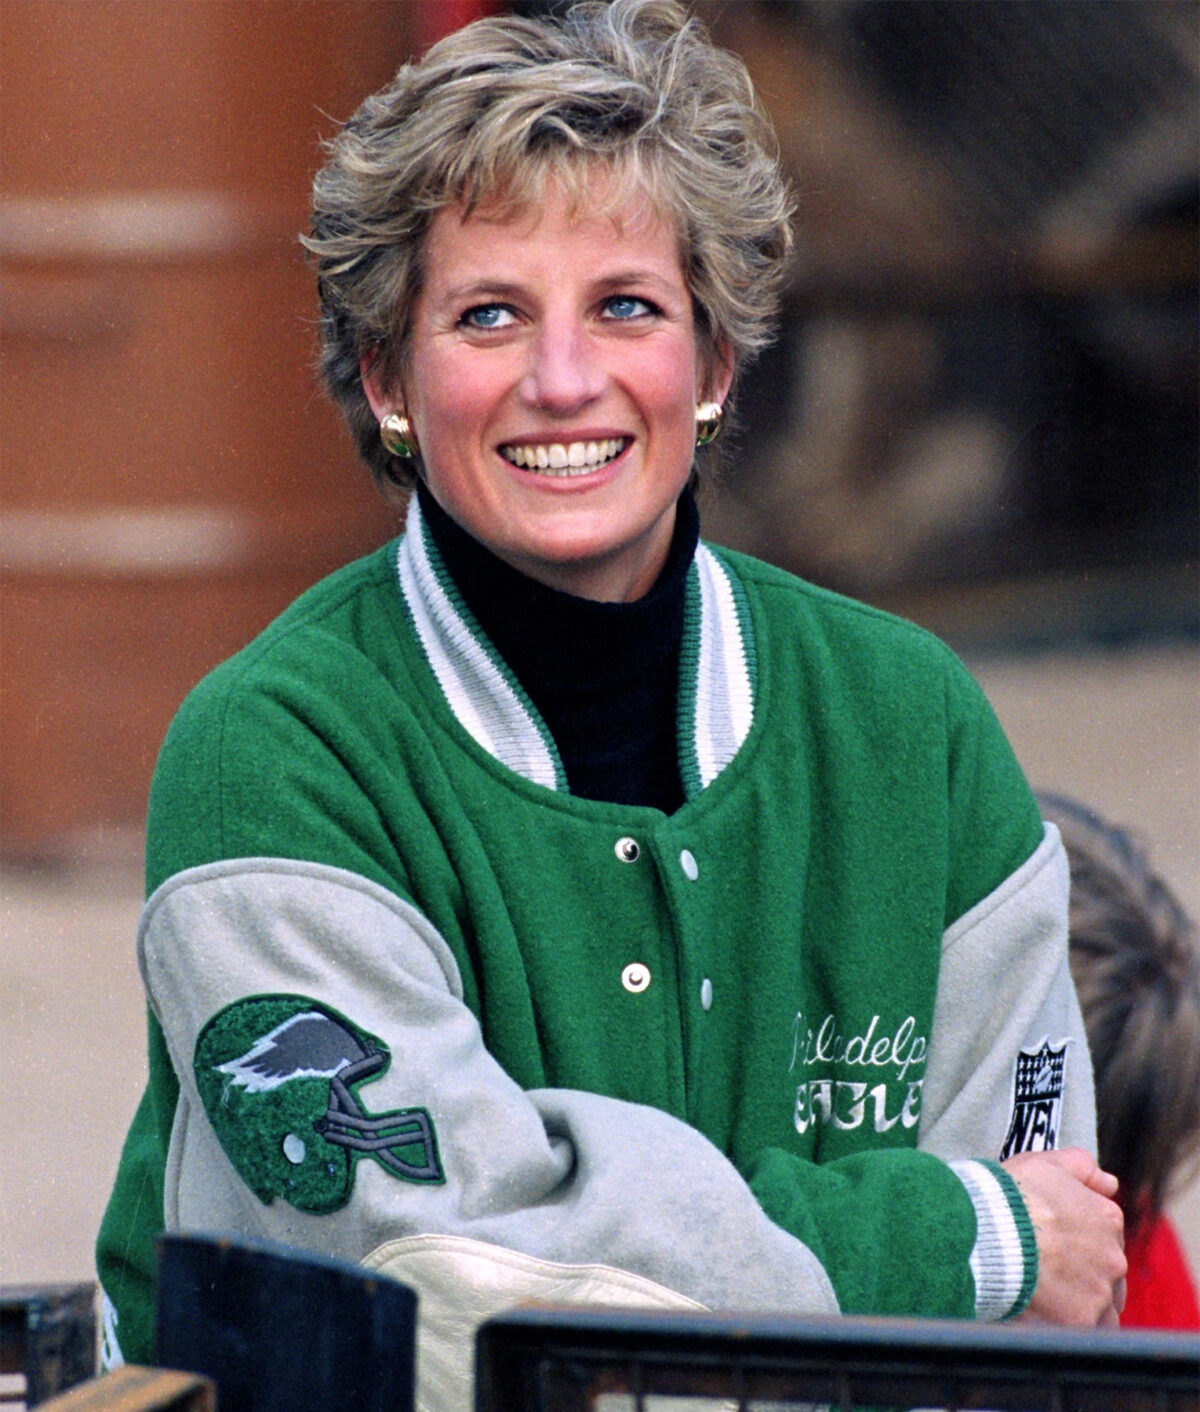 Princess Diana Green Varsity Jacket